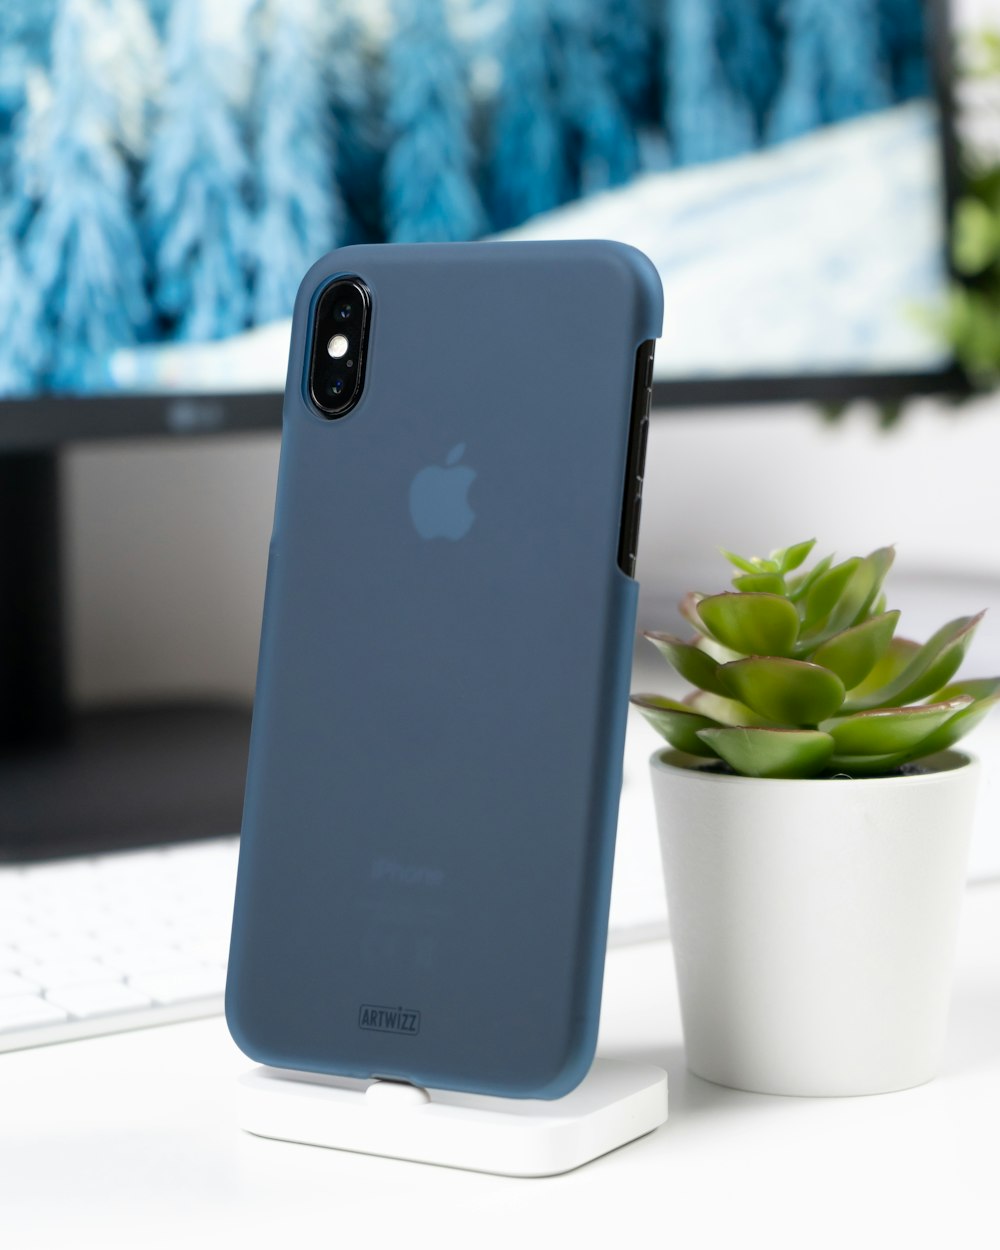 schwarzes iPhone Xs mit blauer Hülle in der Nähe einer grünen Sukkulente